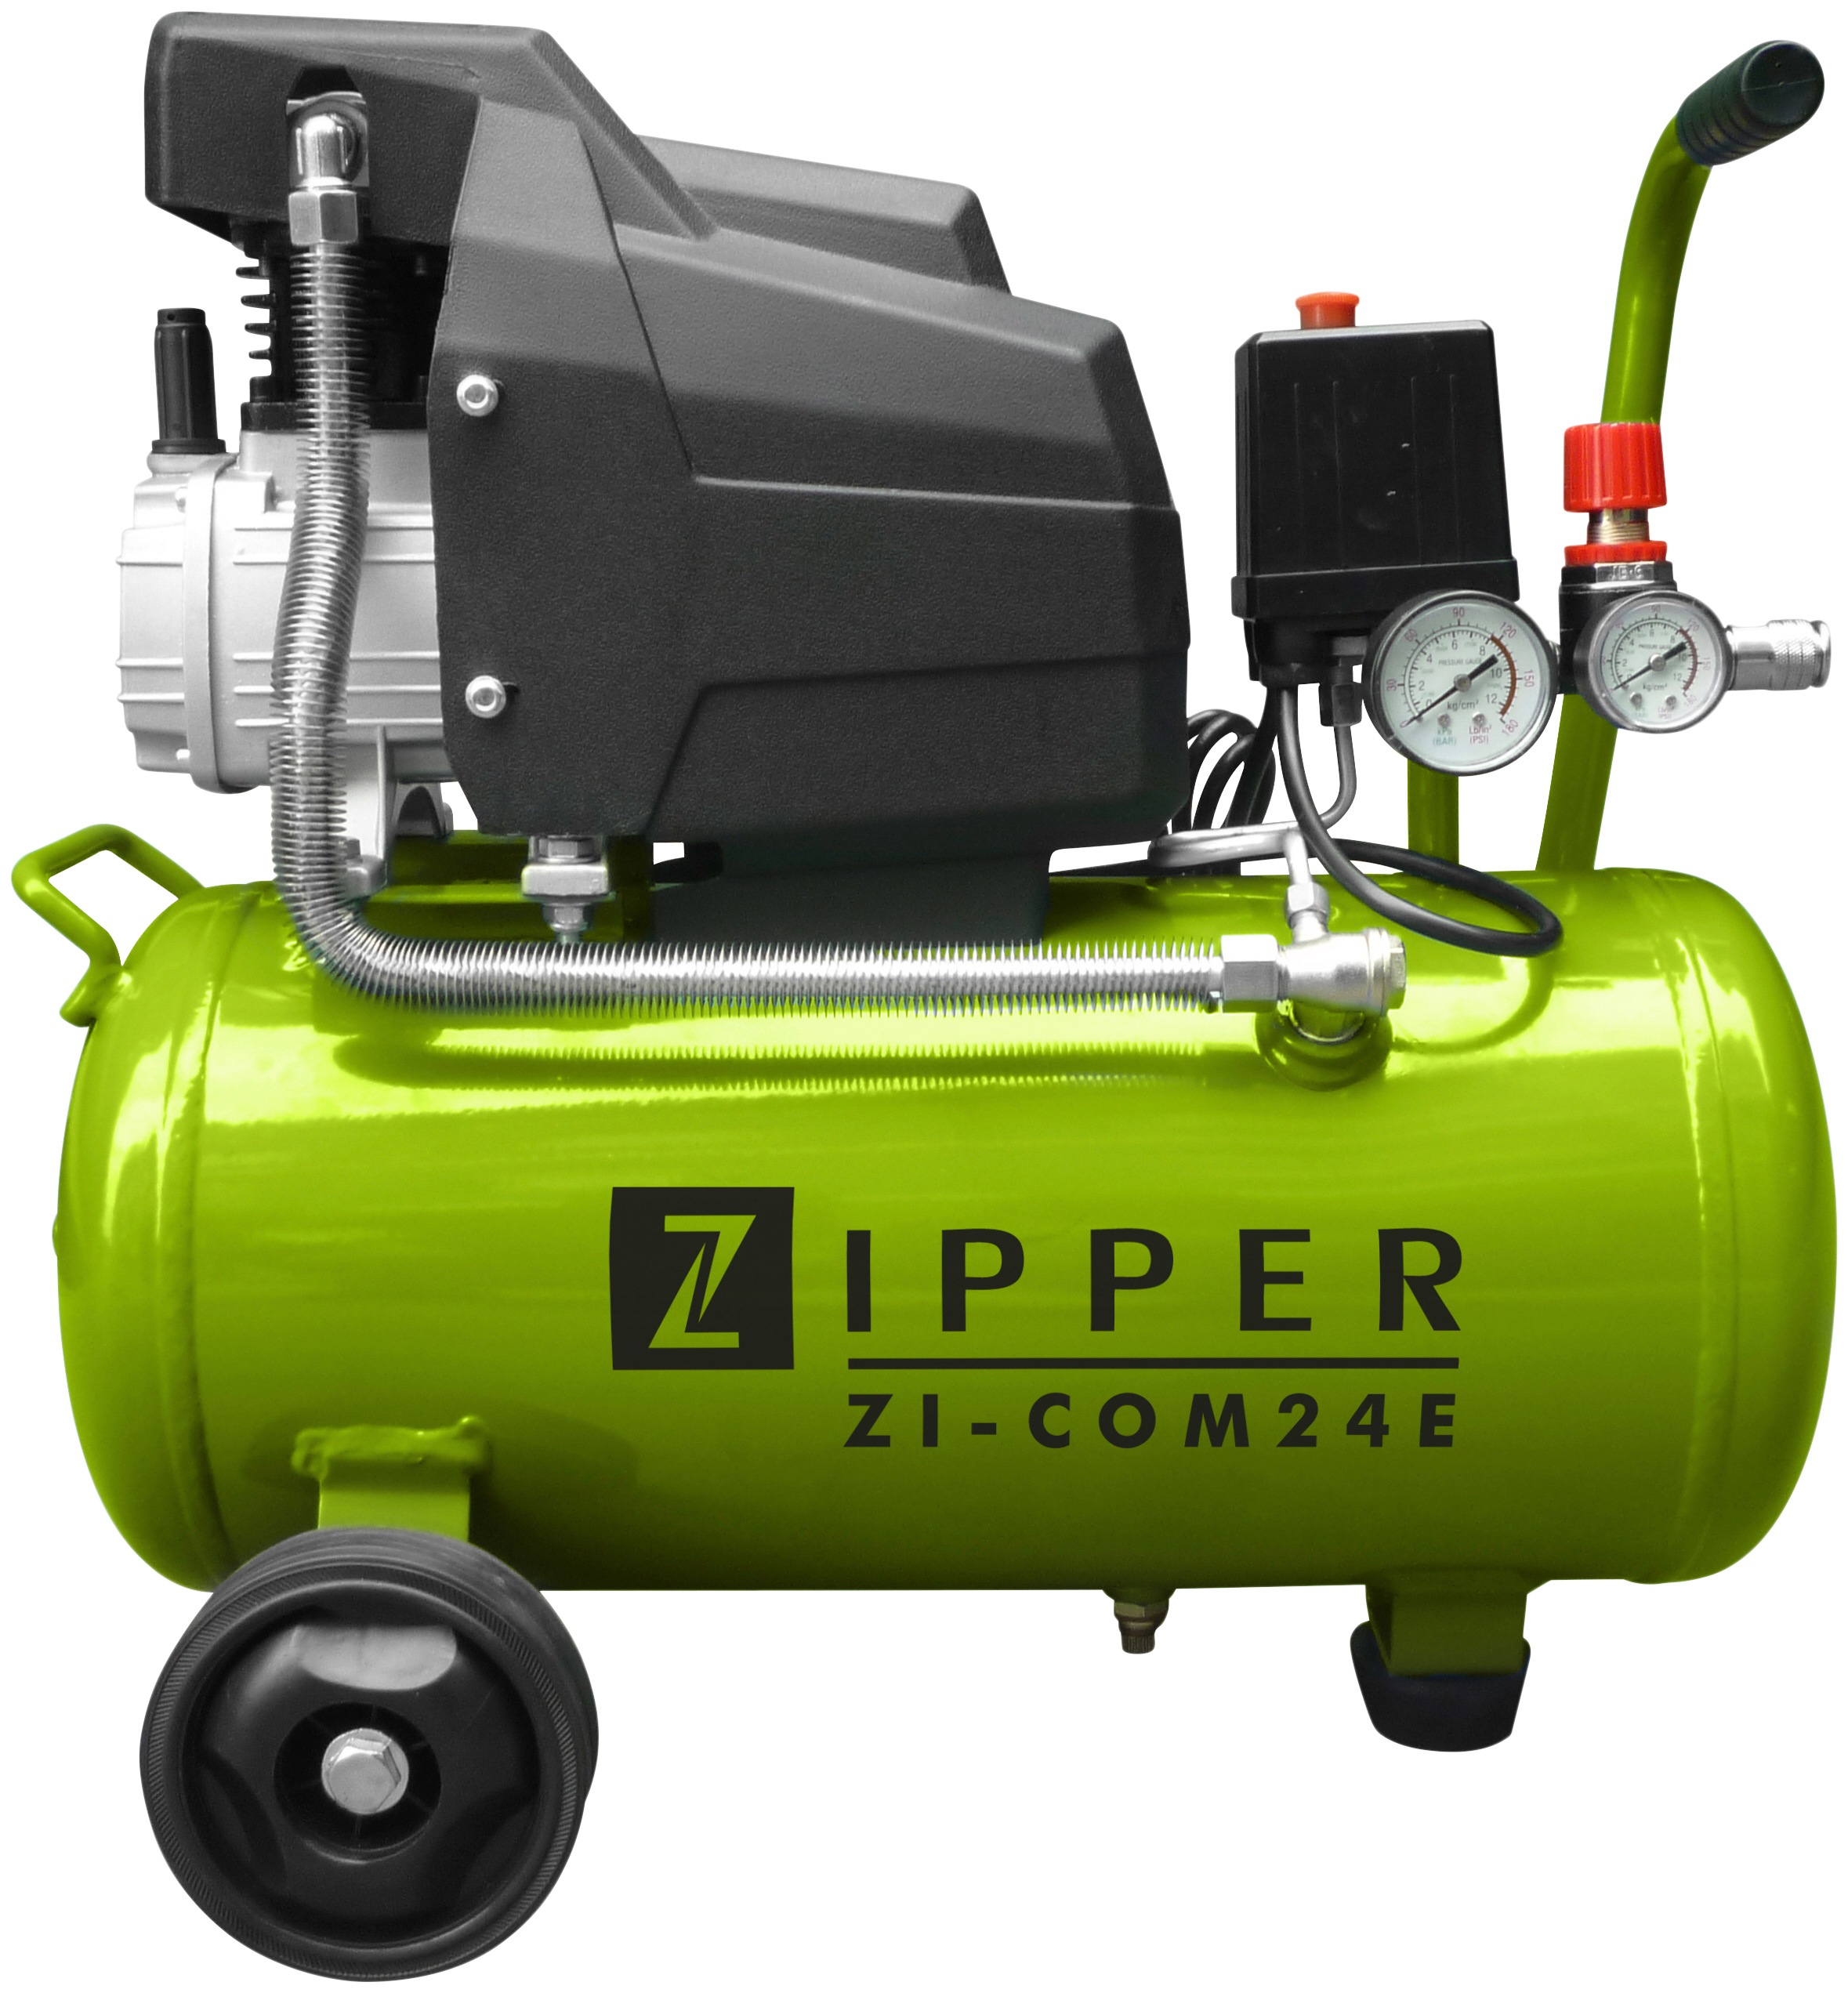 ZIPPER BAUR » Online-Shop | Maschinen Werkzeuge & Baugeräte